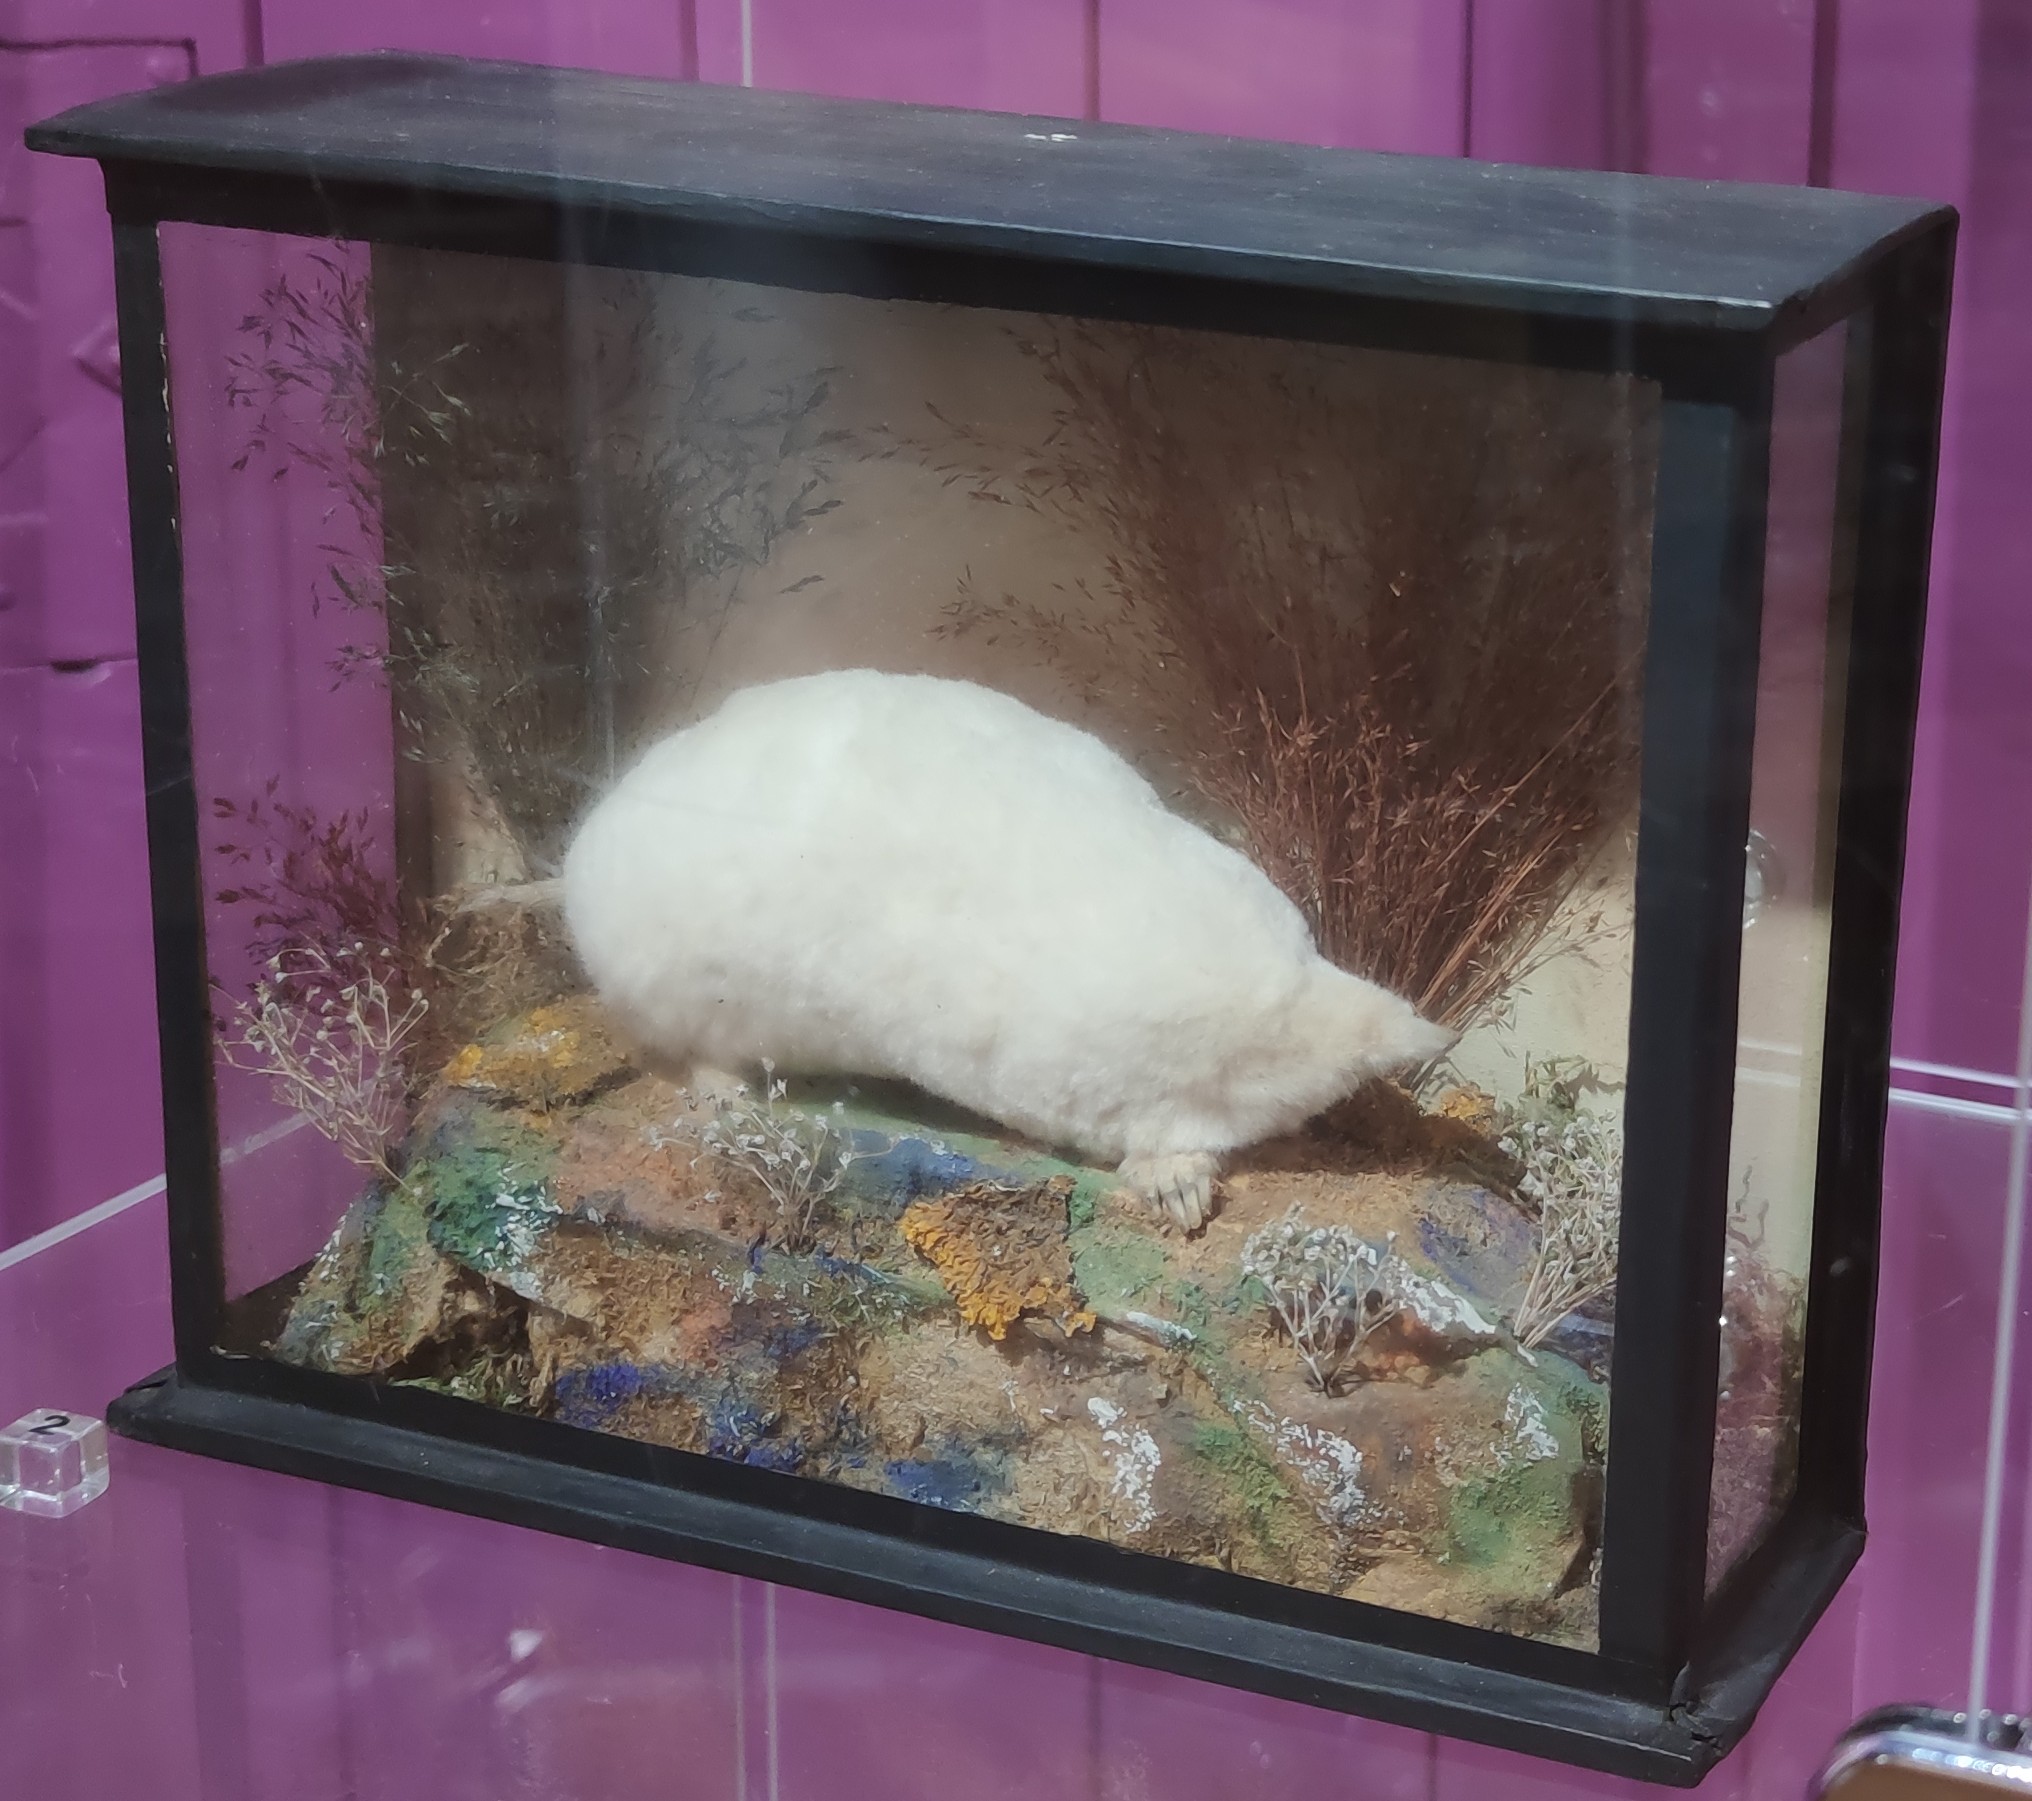 Albino Mole in Display Case